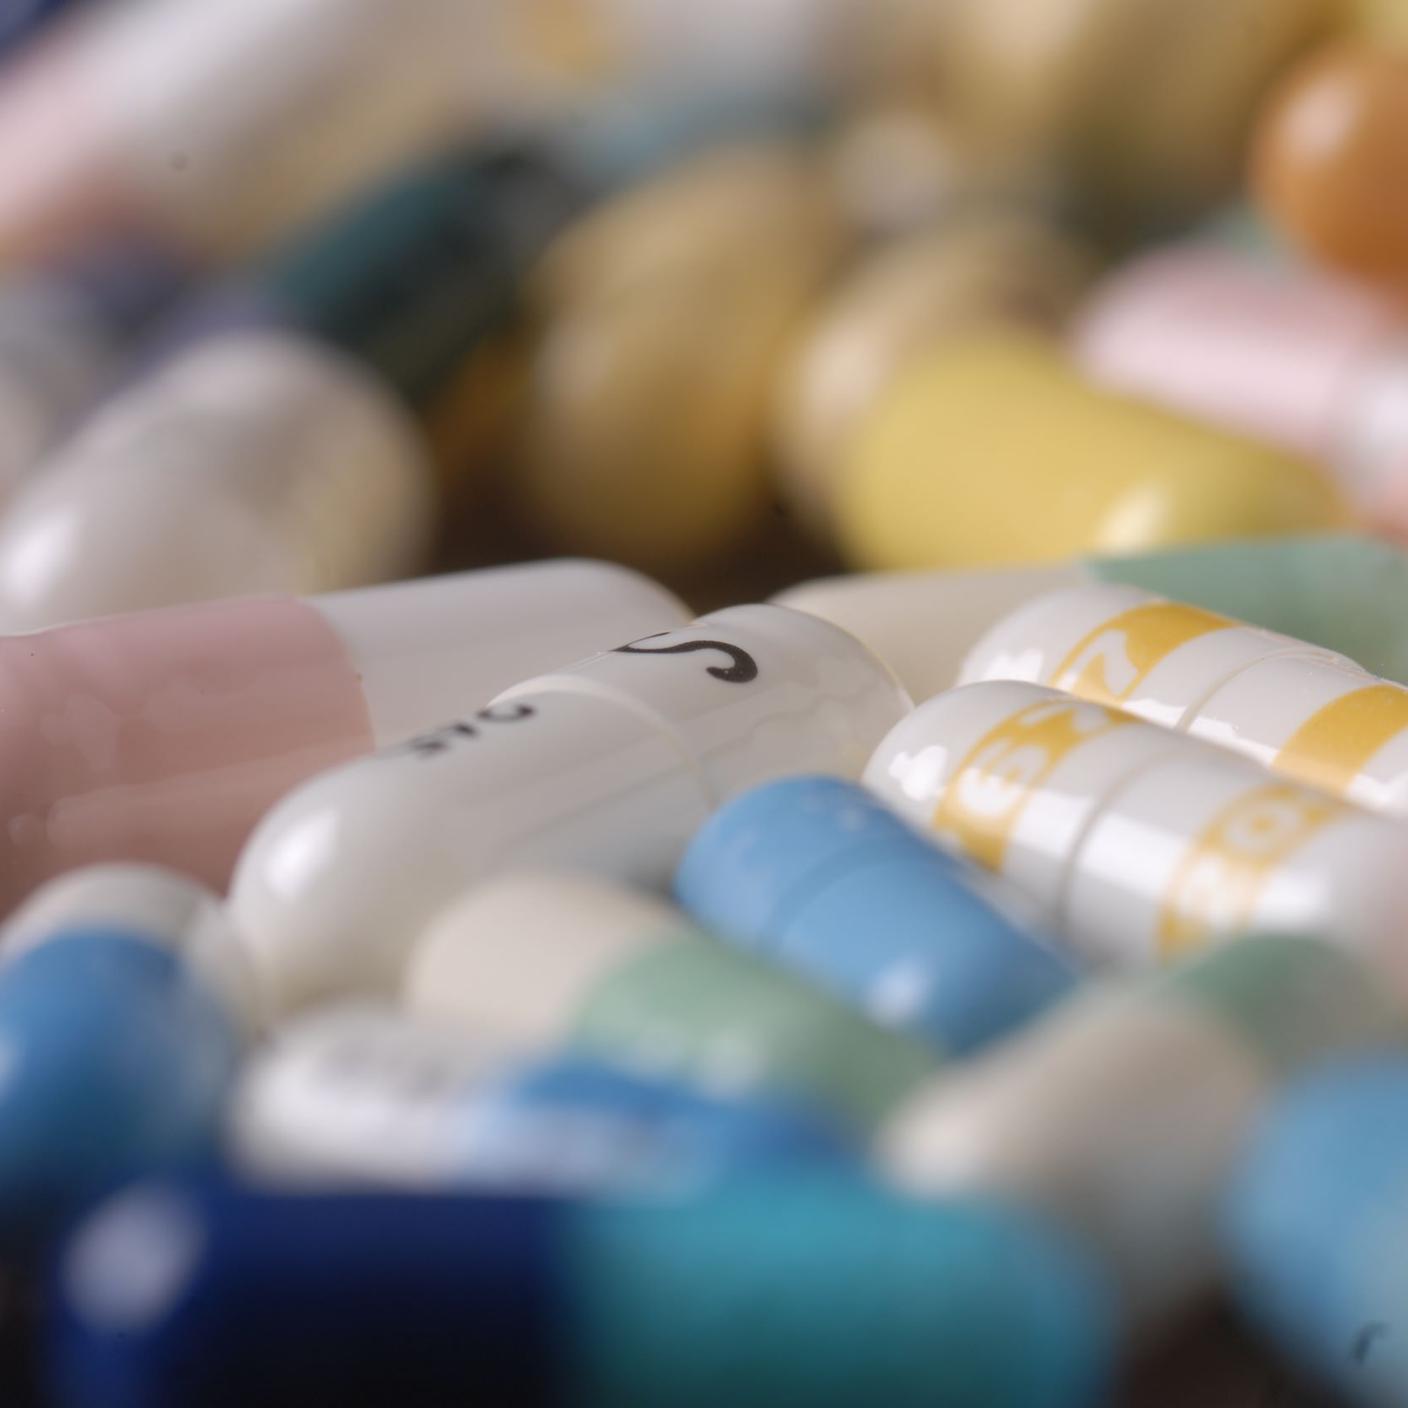 farmaci, medicinali, pastiglie, illegali medicine